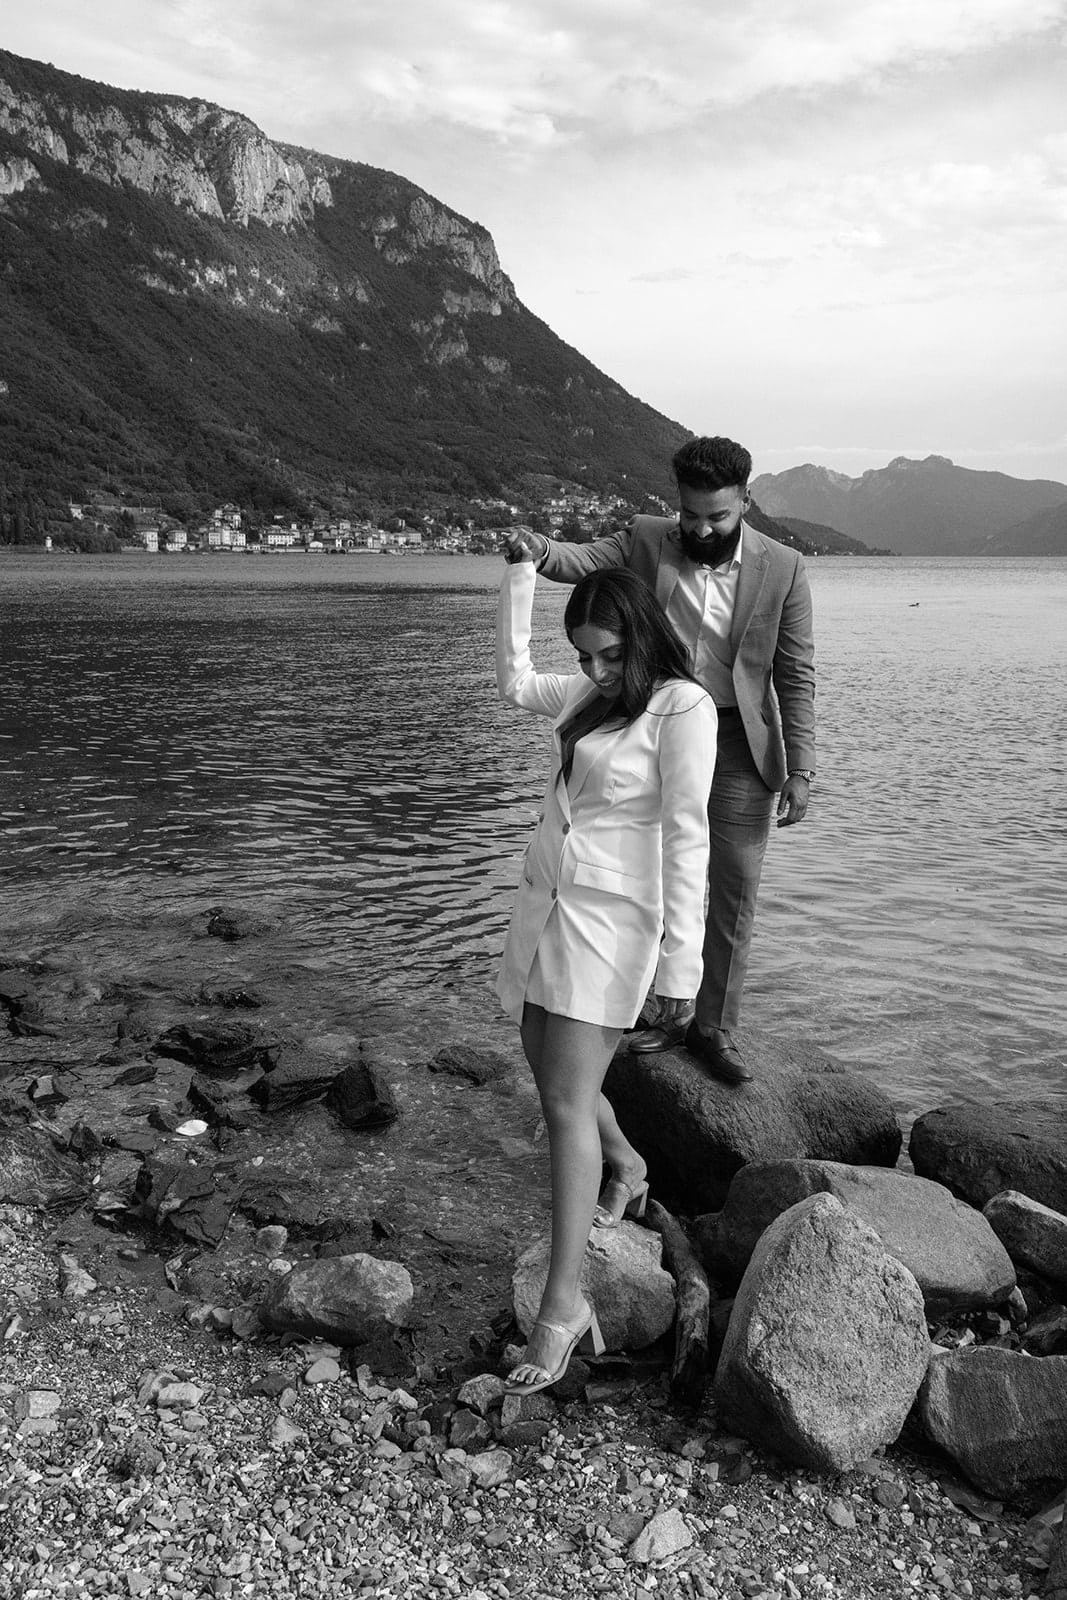 Man and woman walk Lake Como shore